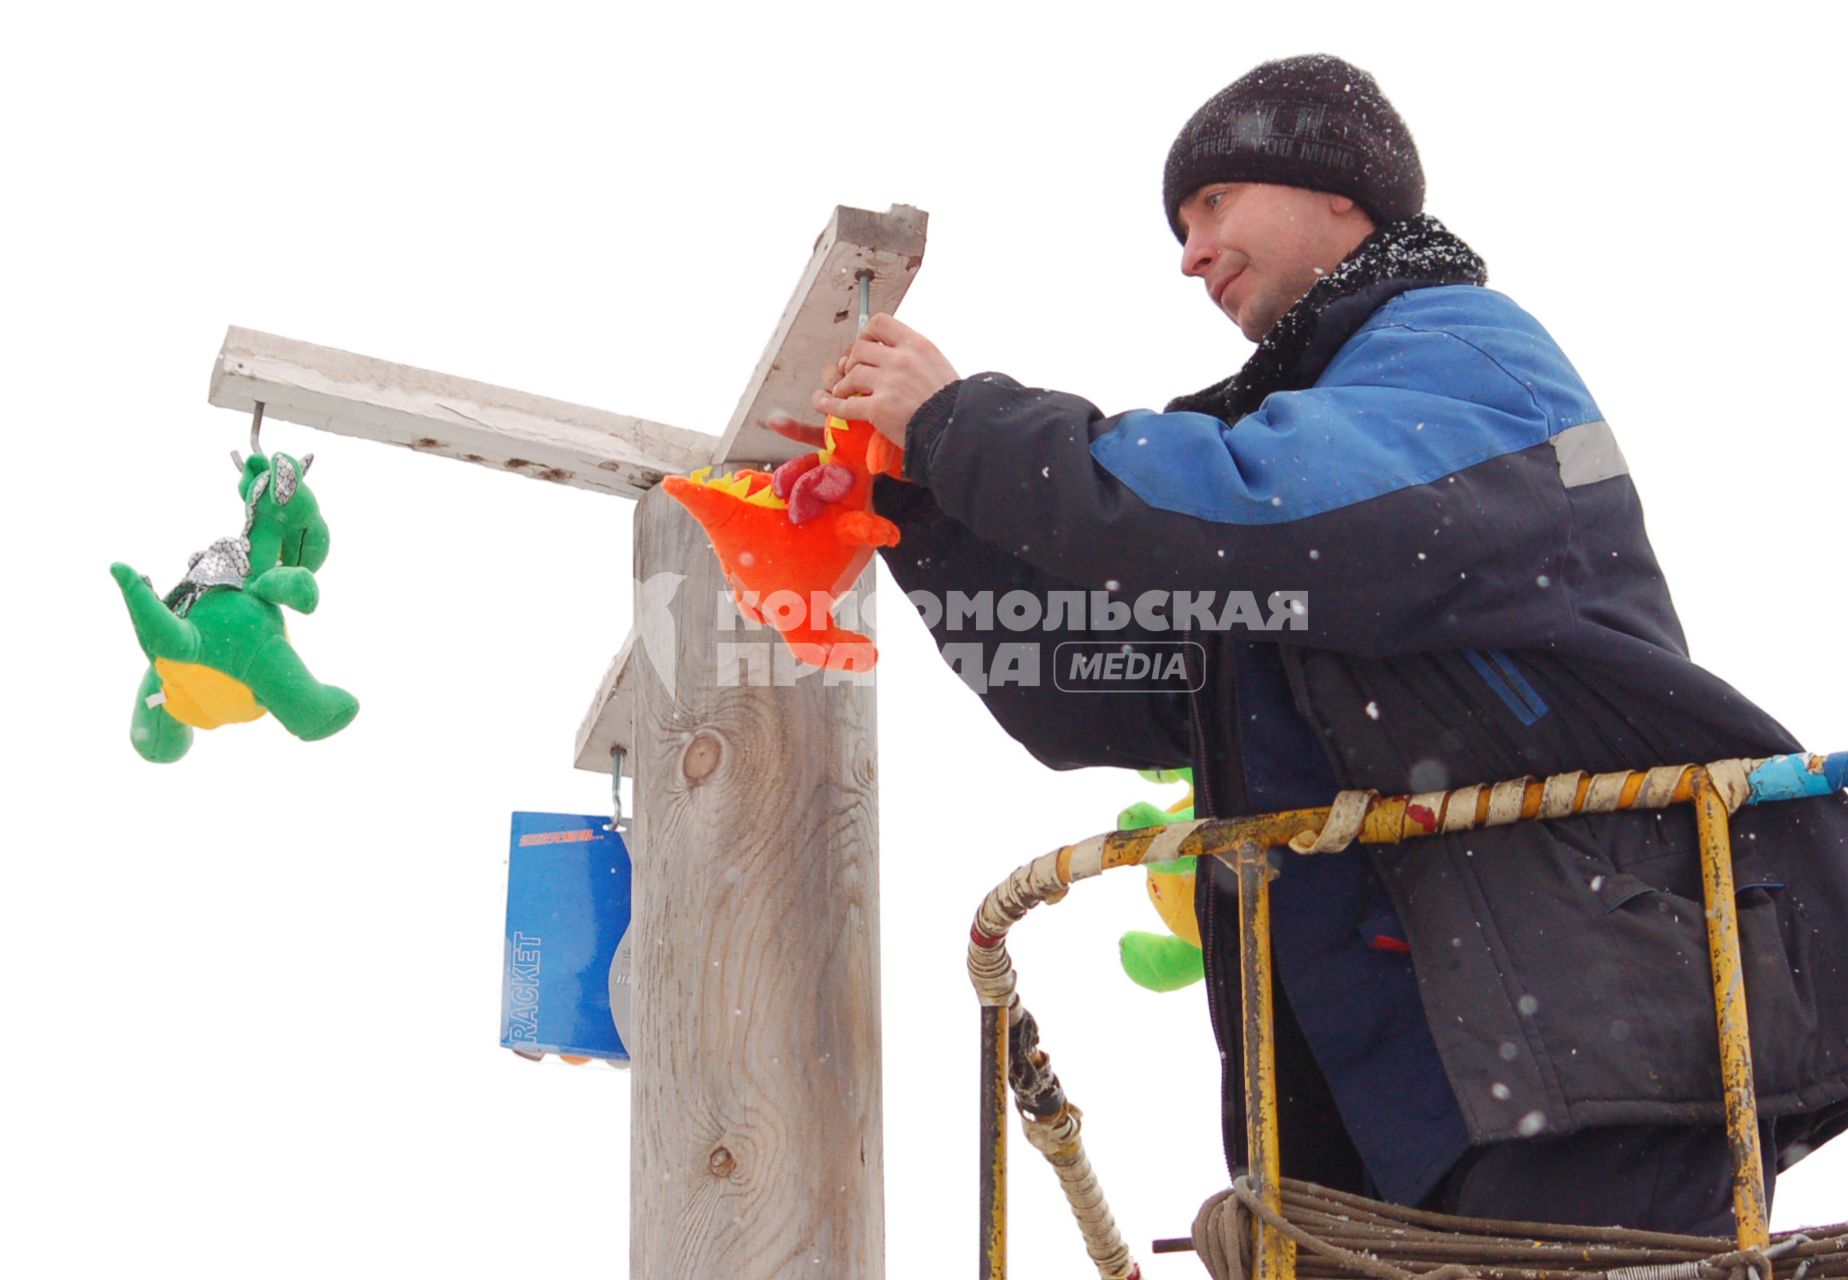 Мужчина развешивает игрушки на ледяном столбе для конкурса.